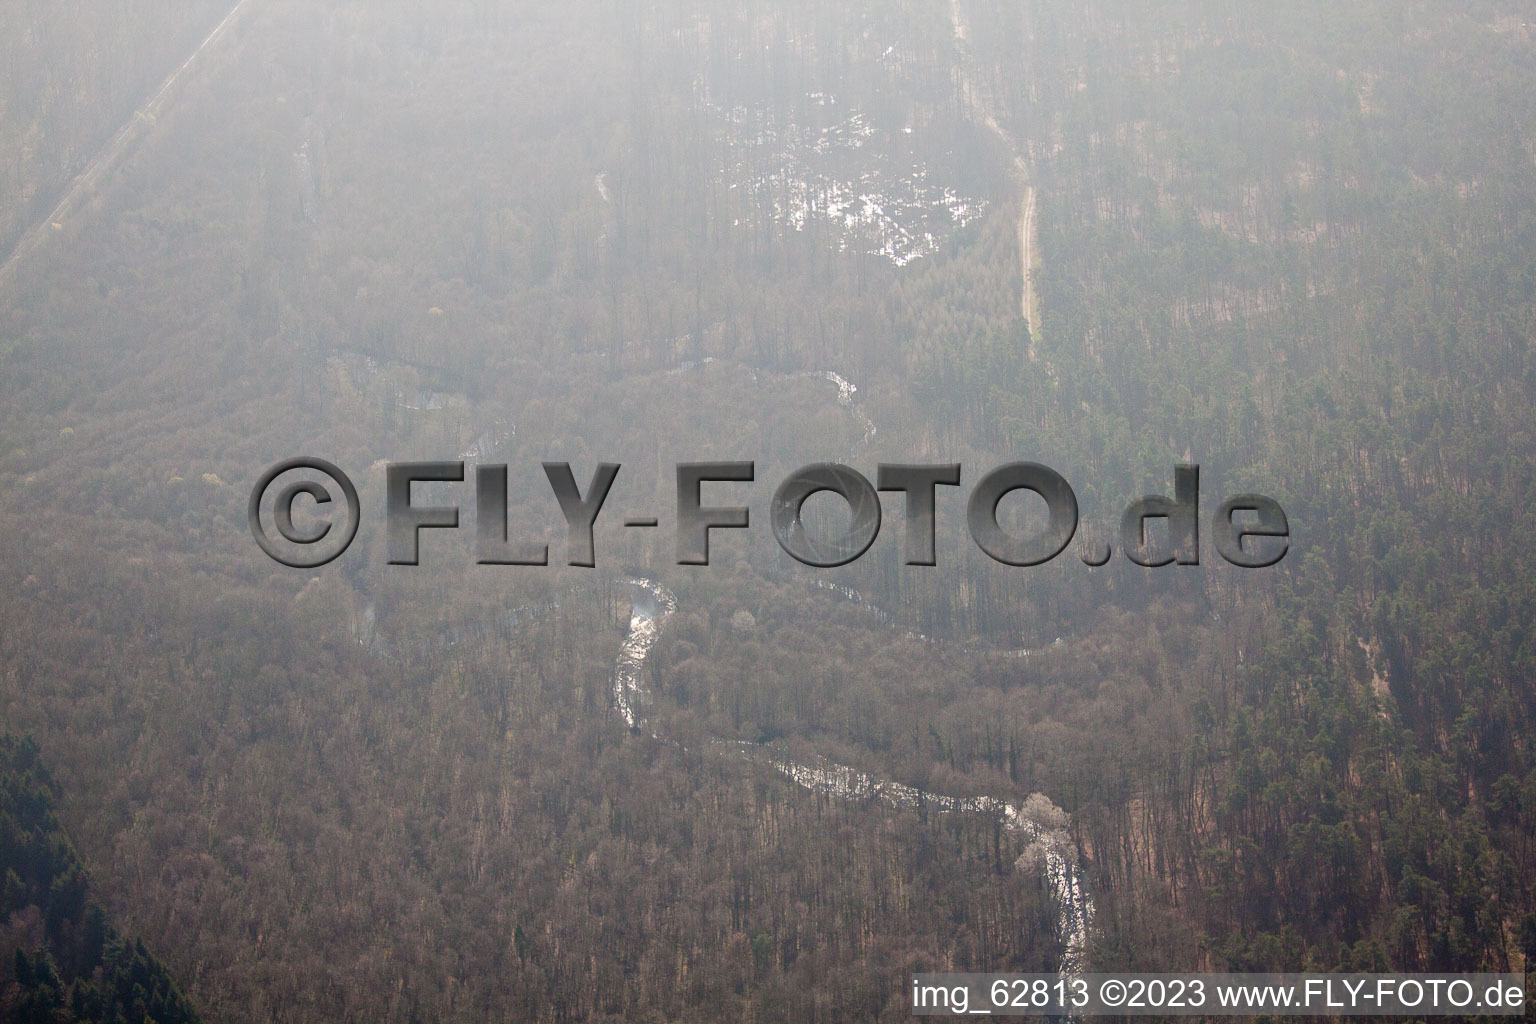 Mertzwiller im Bundesland Bas-Rhin, Frankreich aus der Luft betrachtet